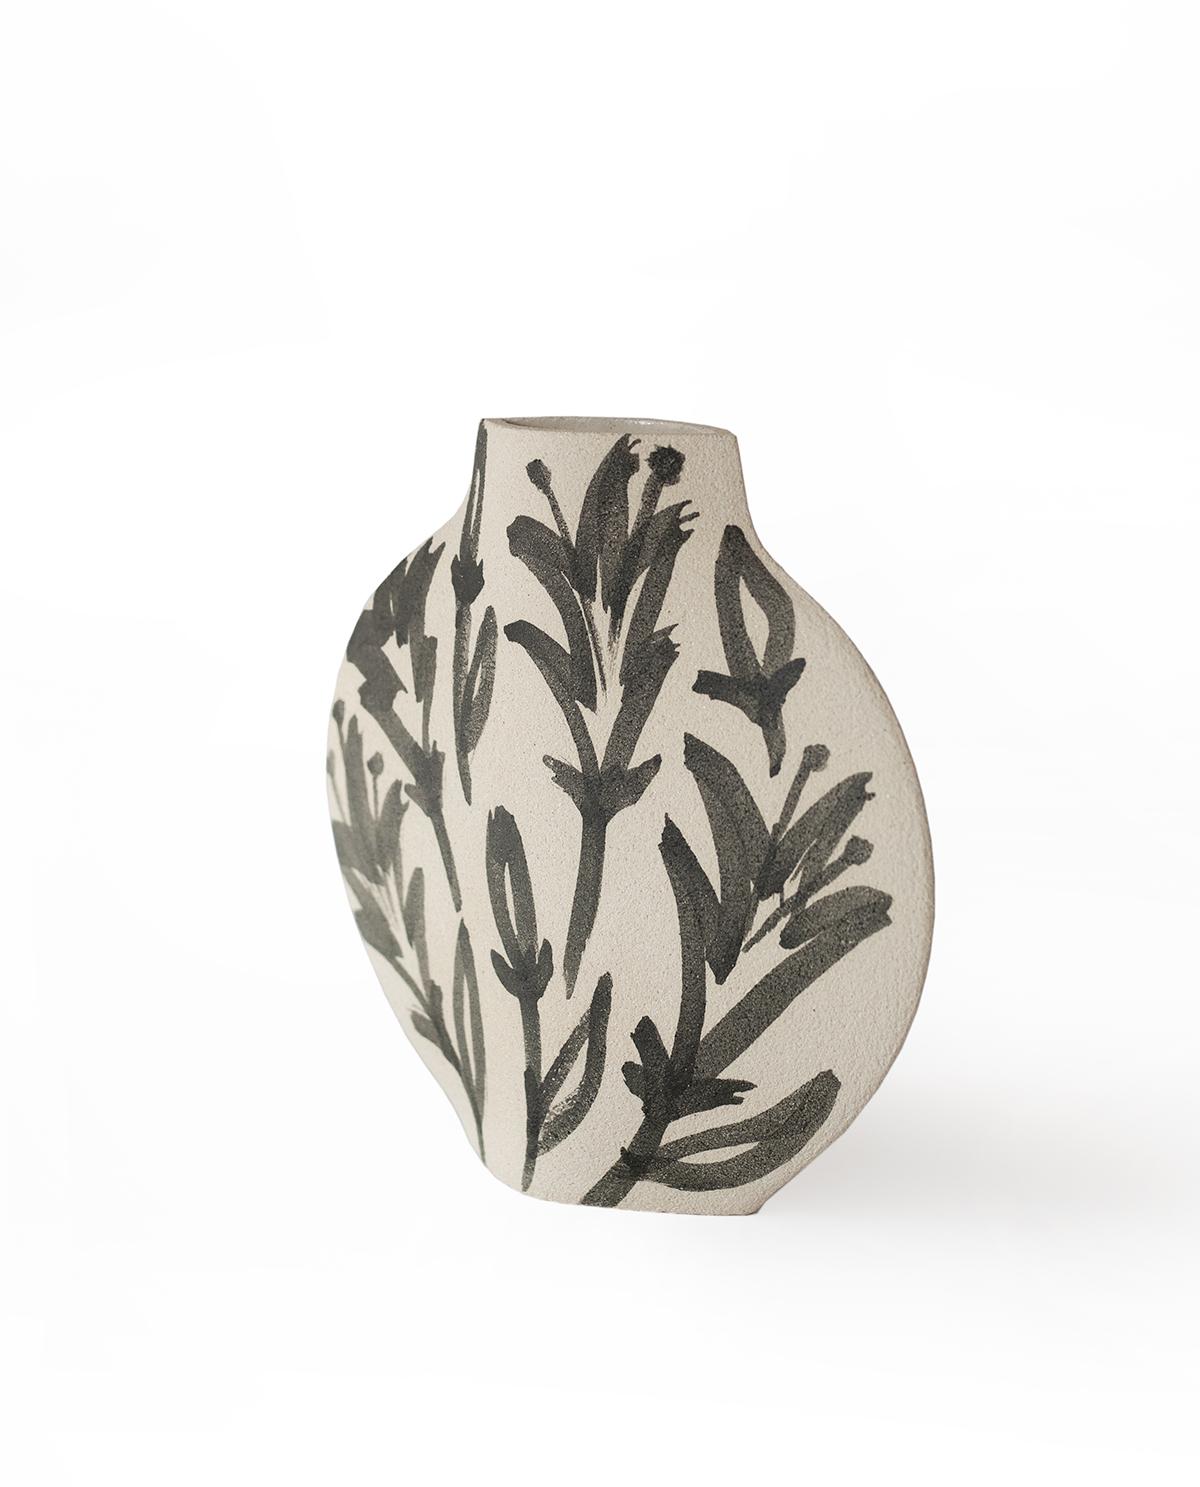 Vase en céramique blanche 'Lilies' fait main.

Ce vase fait partie d'une nouvelle série inspirée par les fleurs (et plus généralement les éléments organiques). Voici notre modèle Lune [A&M] avec des motifs basés sur des fleurs de lys. Ils sont